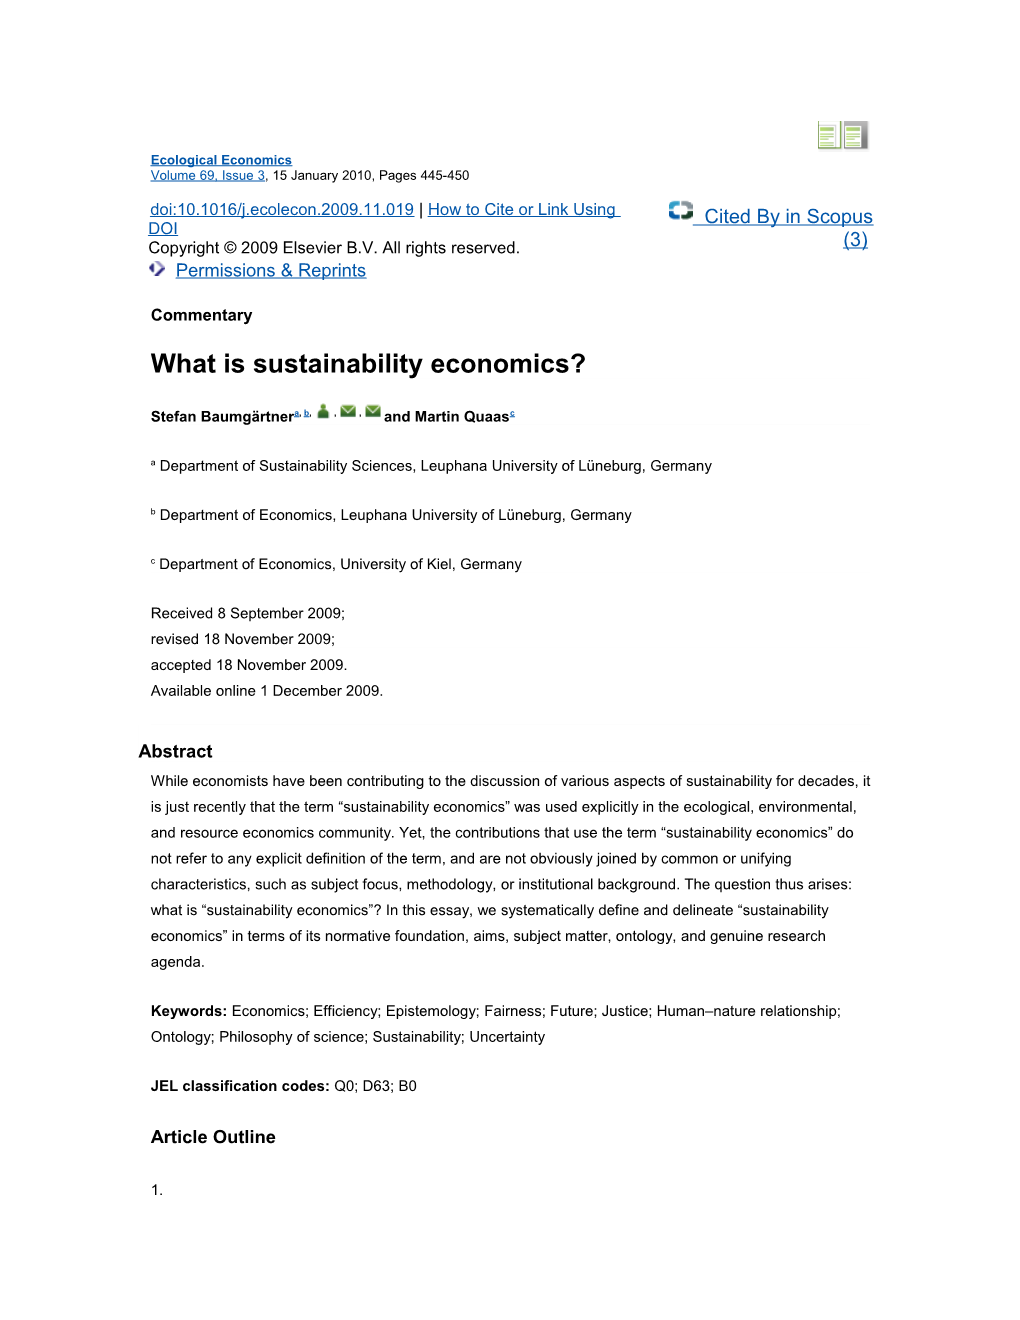 What Is Sustainability Economics?